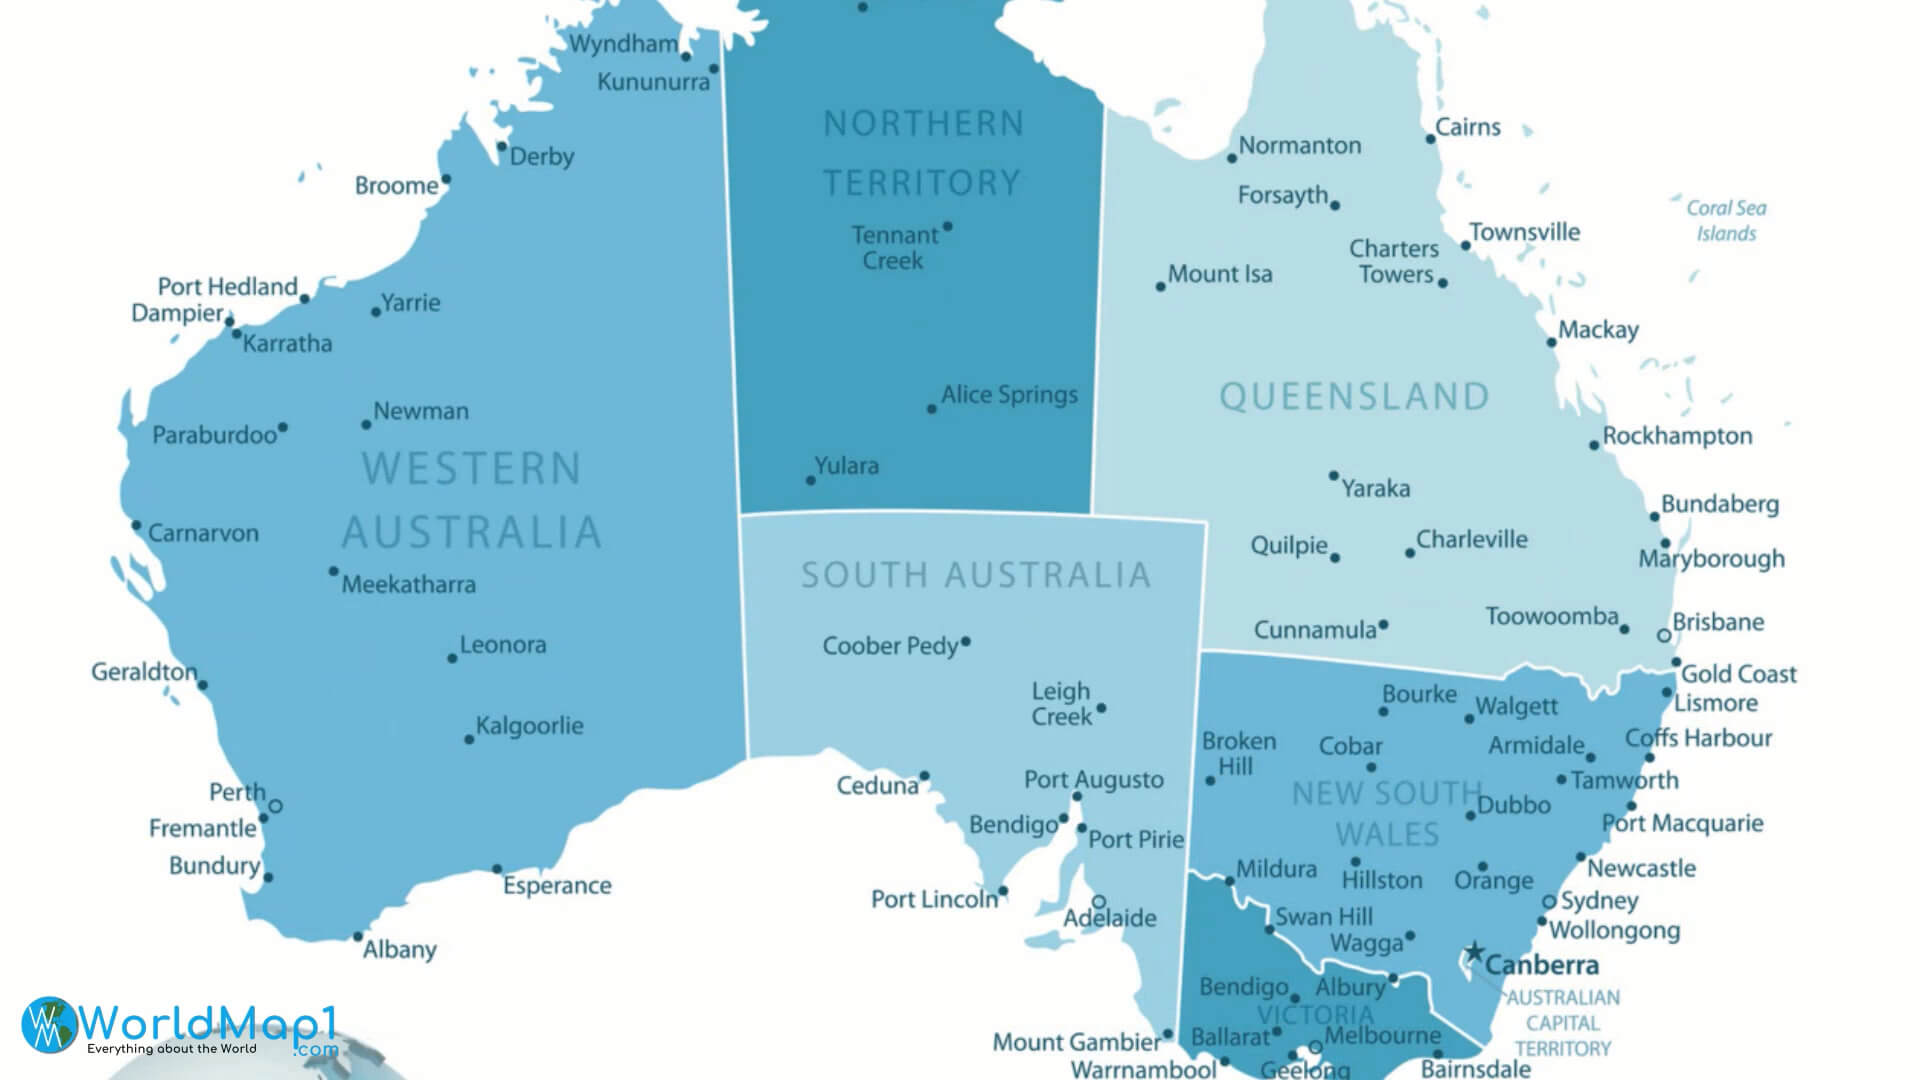 Australia Main Cities Map